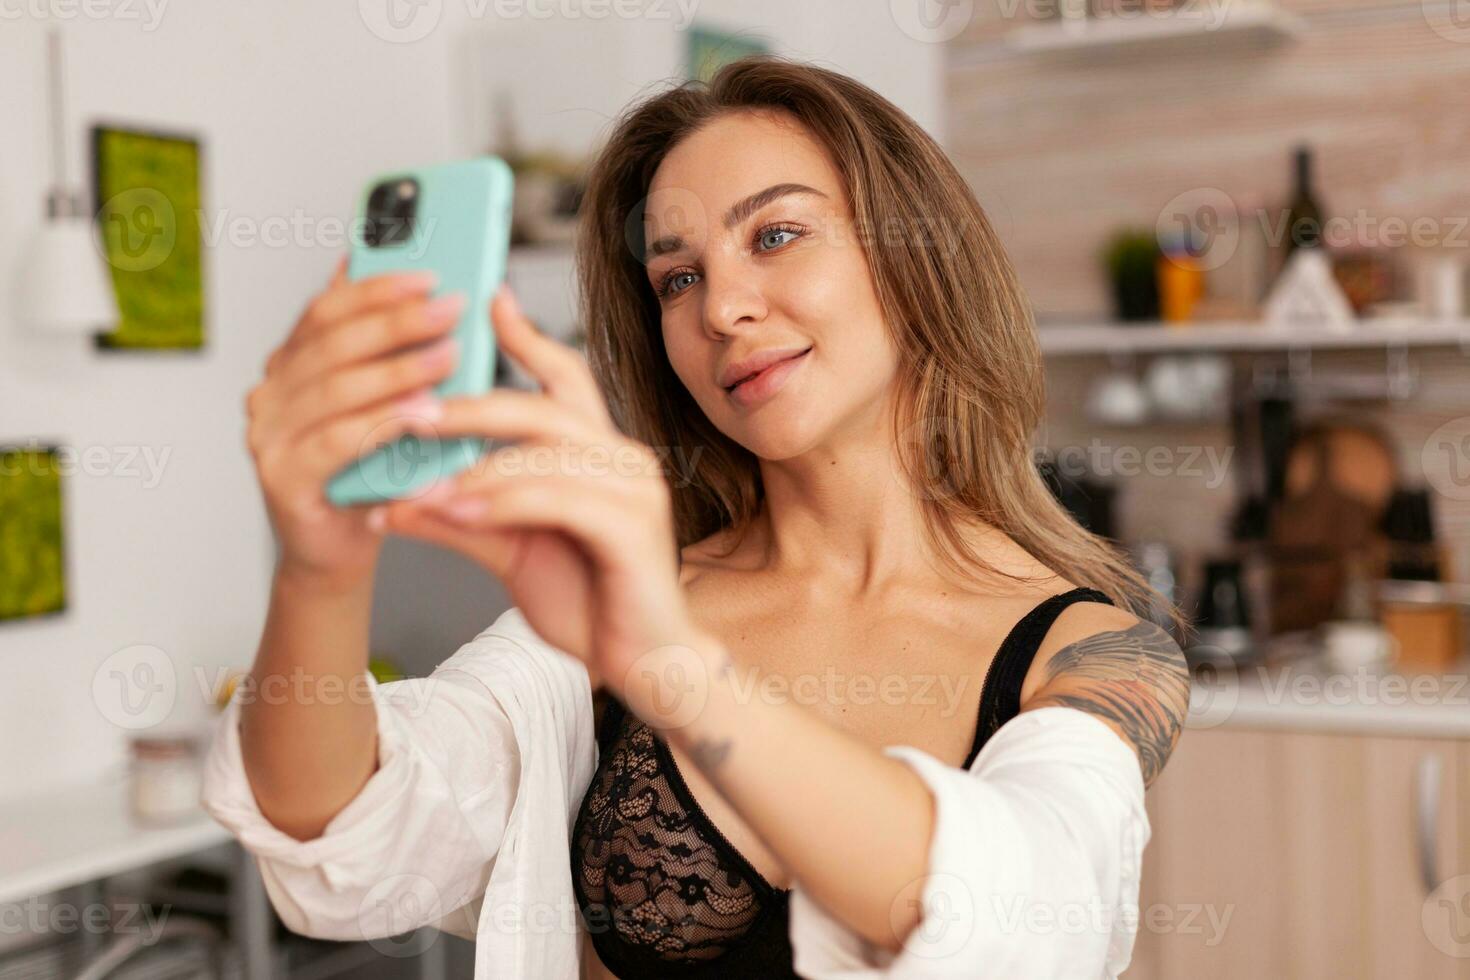 kvinna ejoyer tar foton under frukost bär sexig underkläder. förförisk kvinna med tatueringar använder sig av smartphone bär temping underkläder i de morgon.